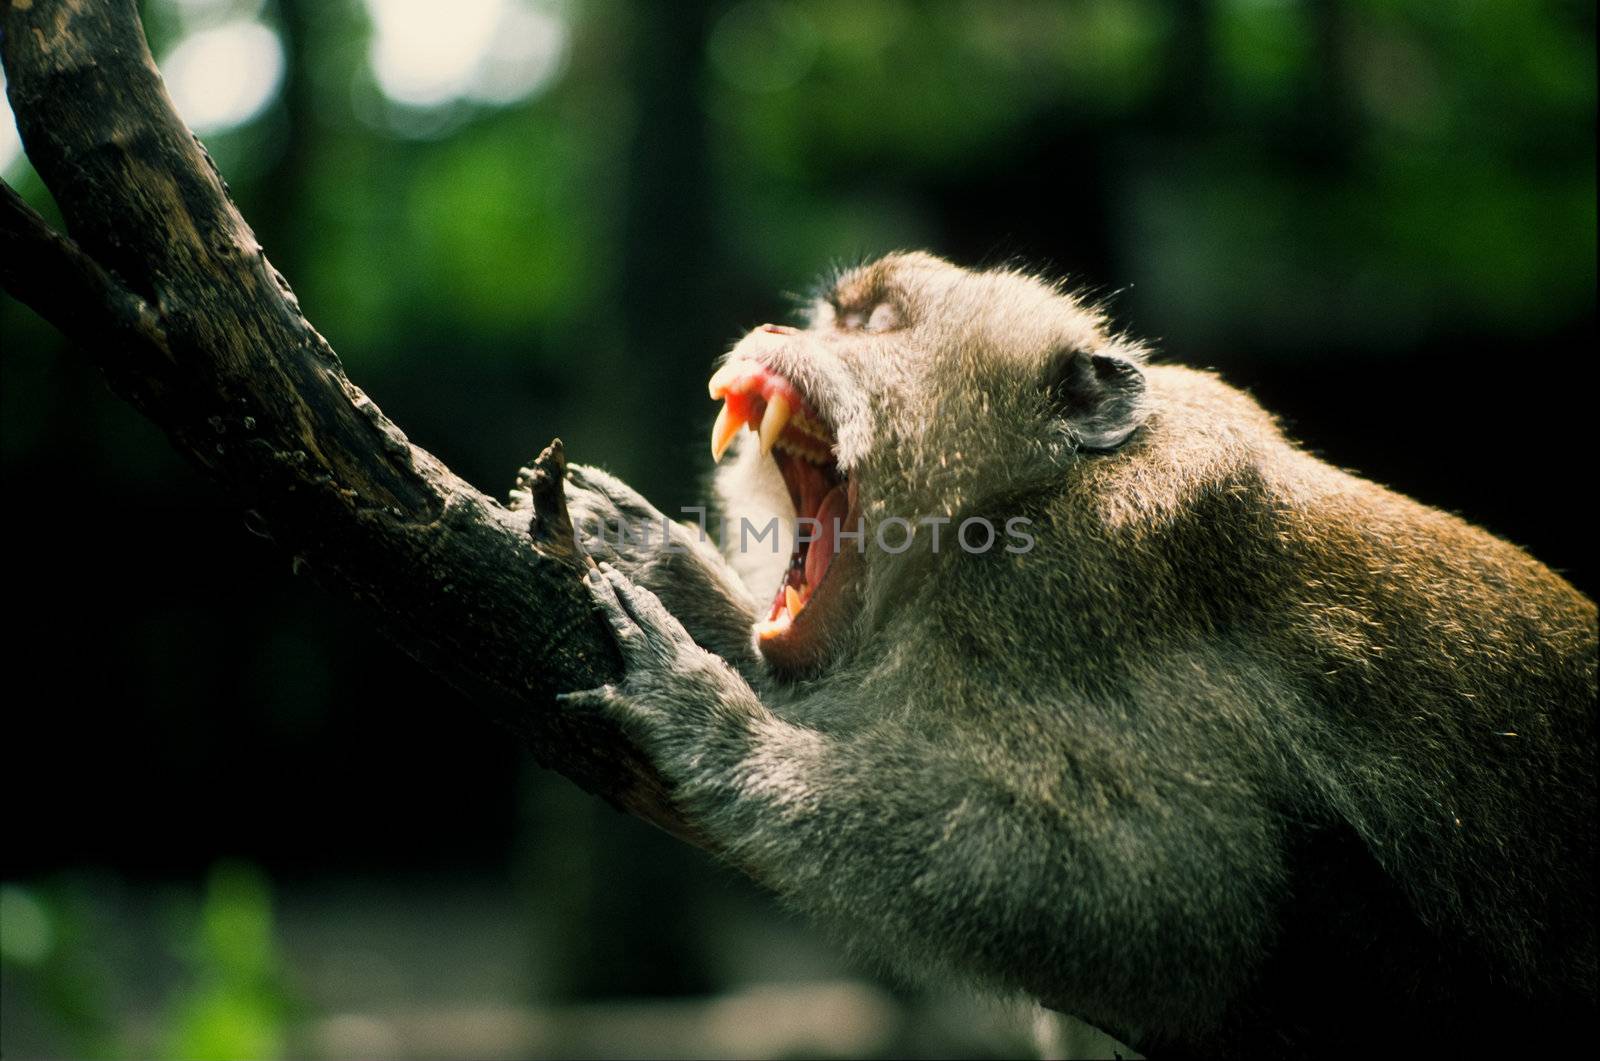 Monkey baring teeth by edan